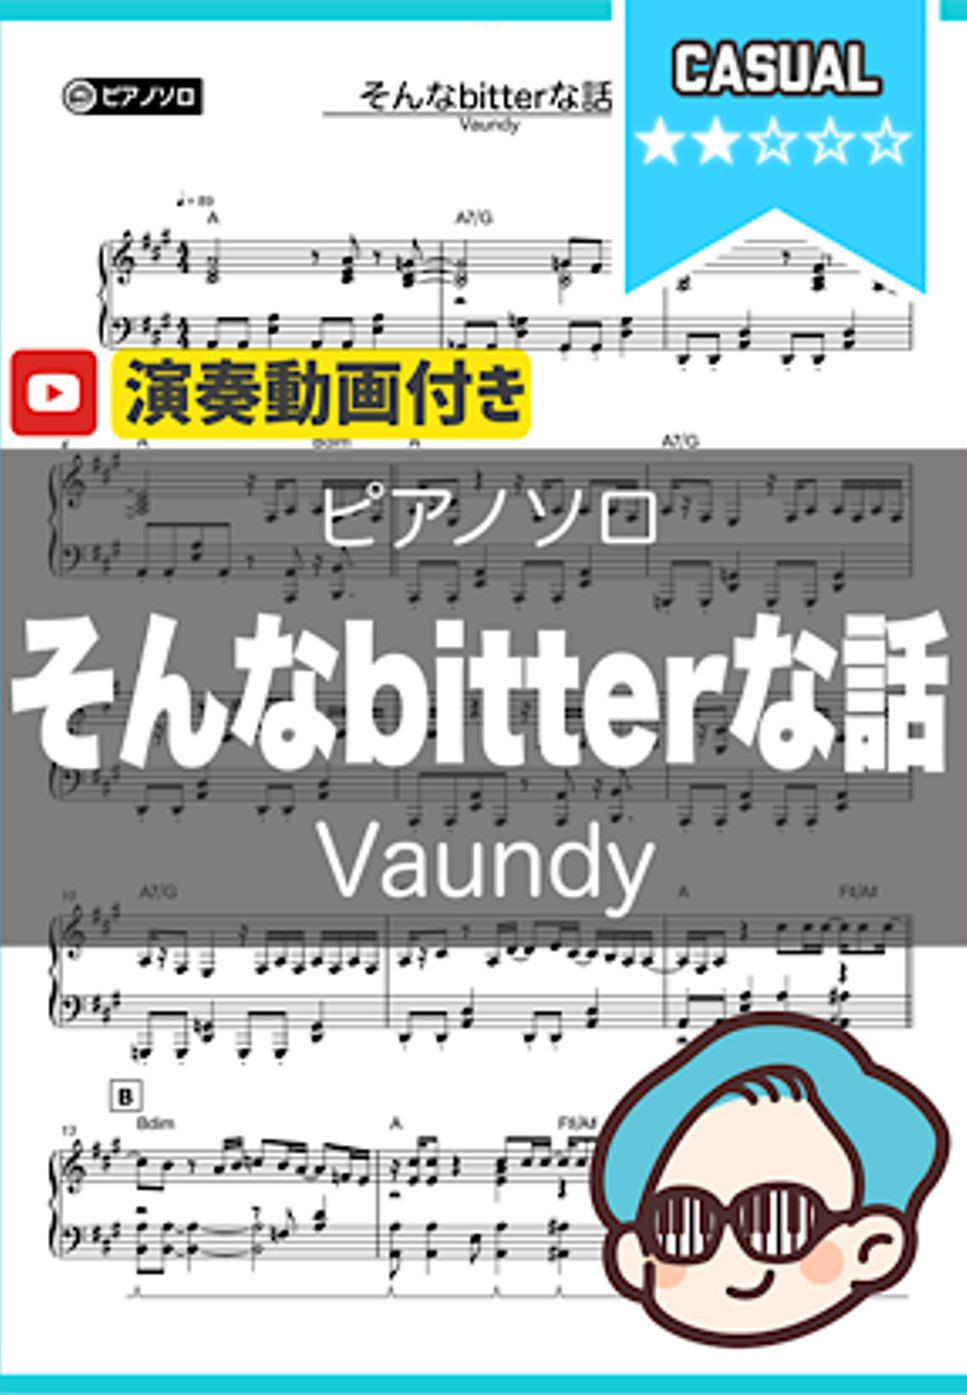 Vaundy - そんなbitterな話 by シータピアノ